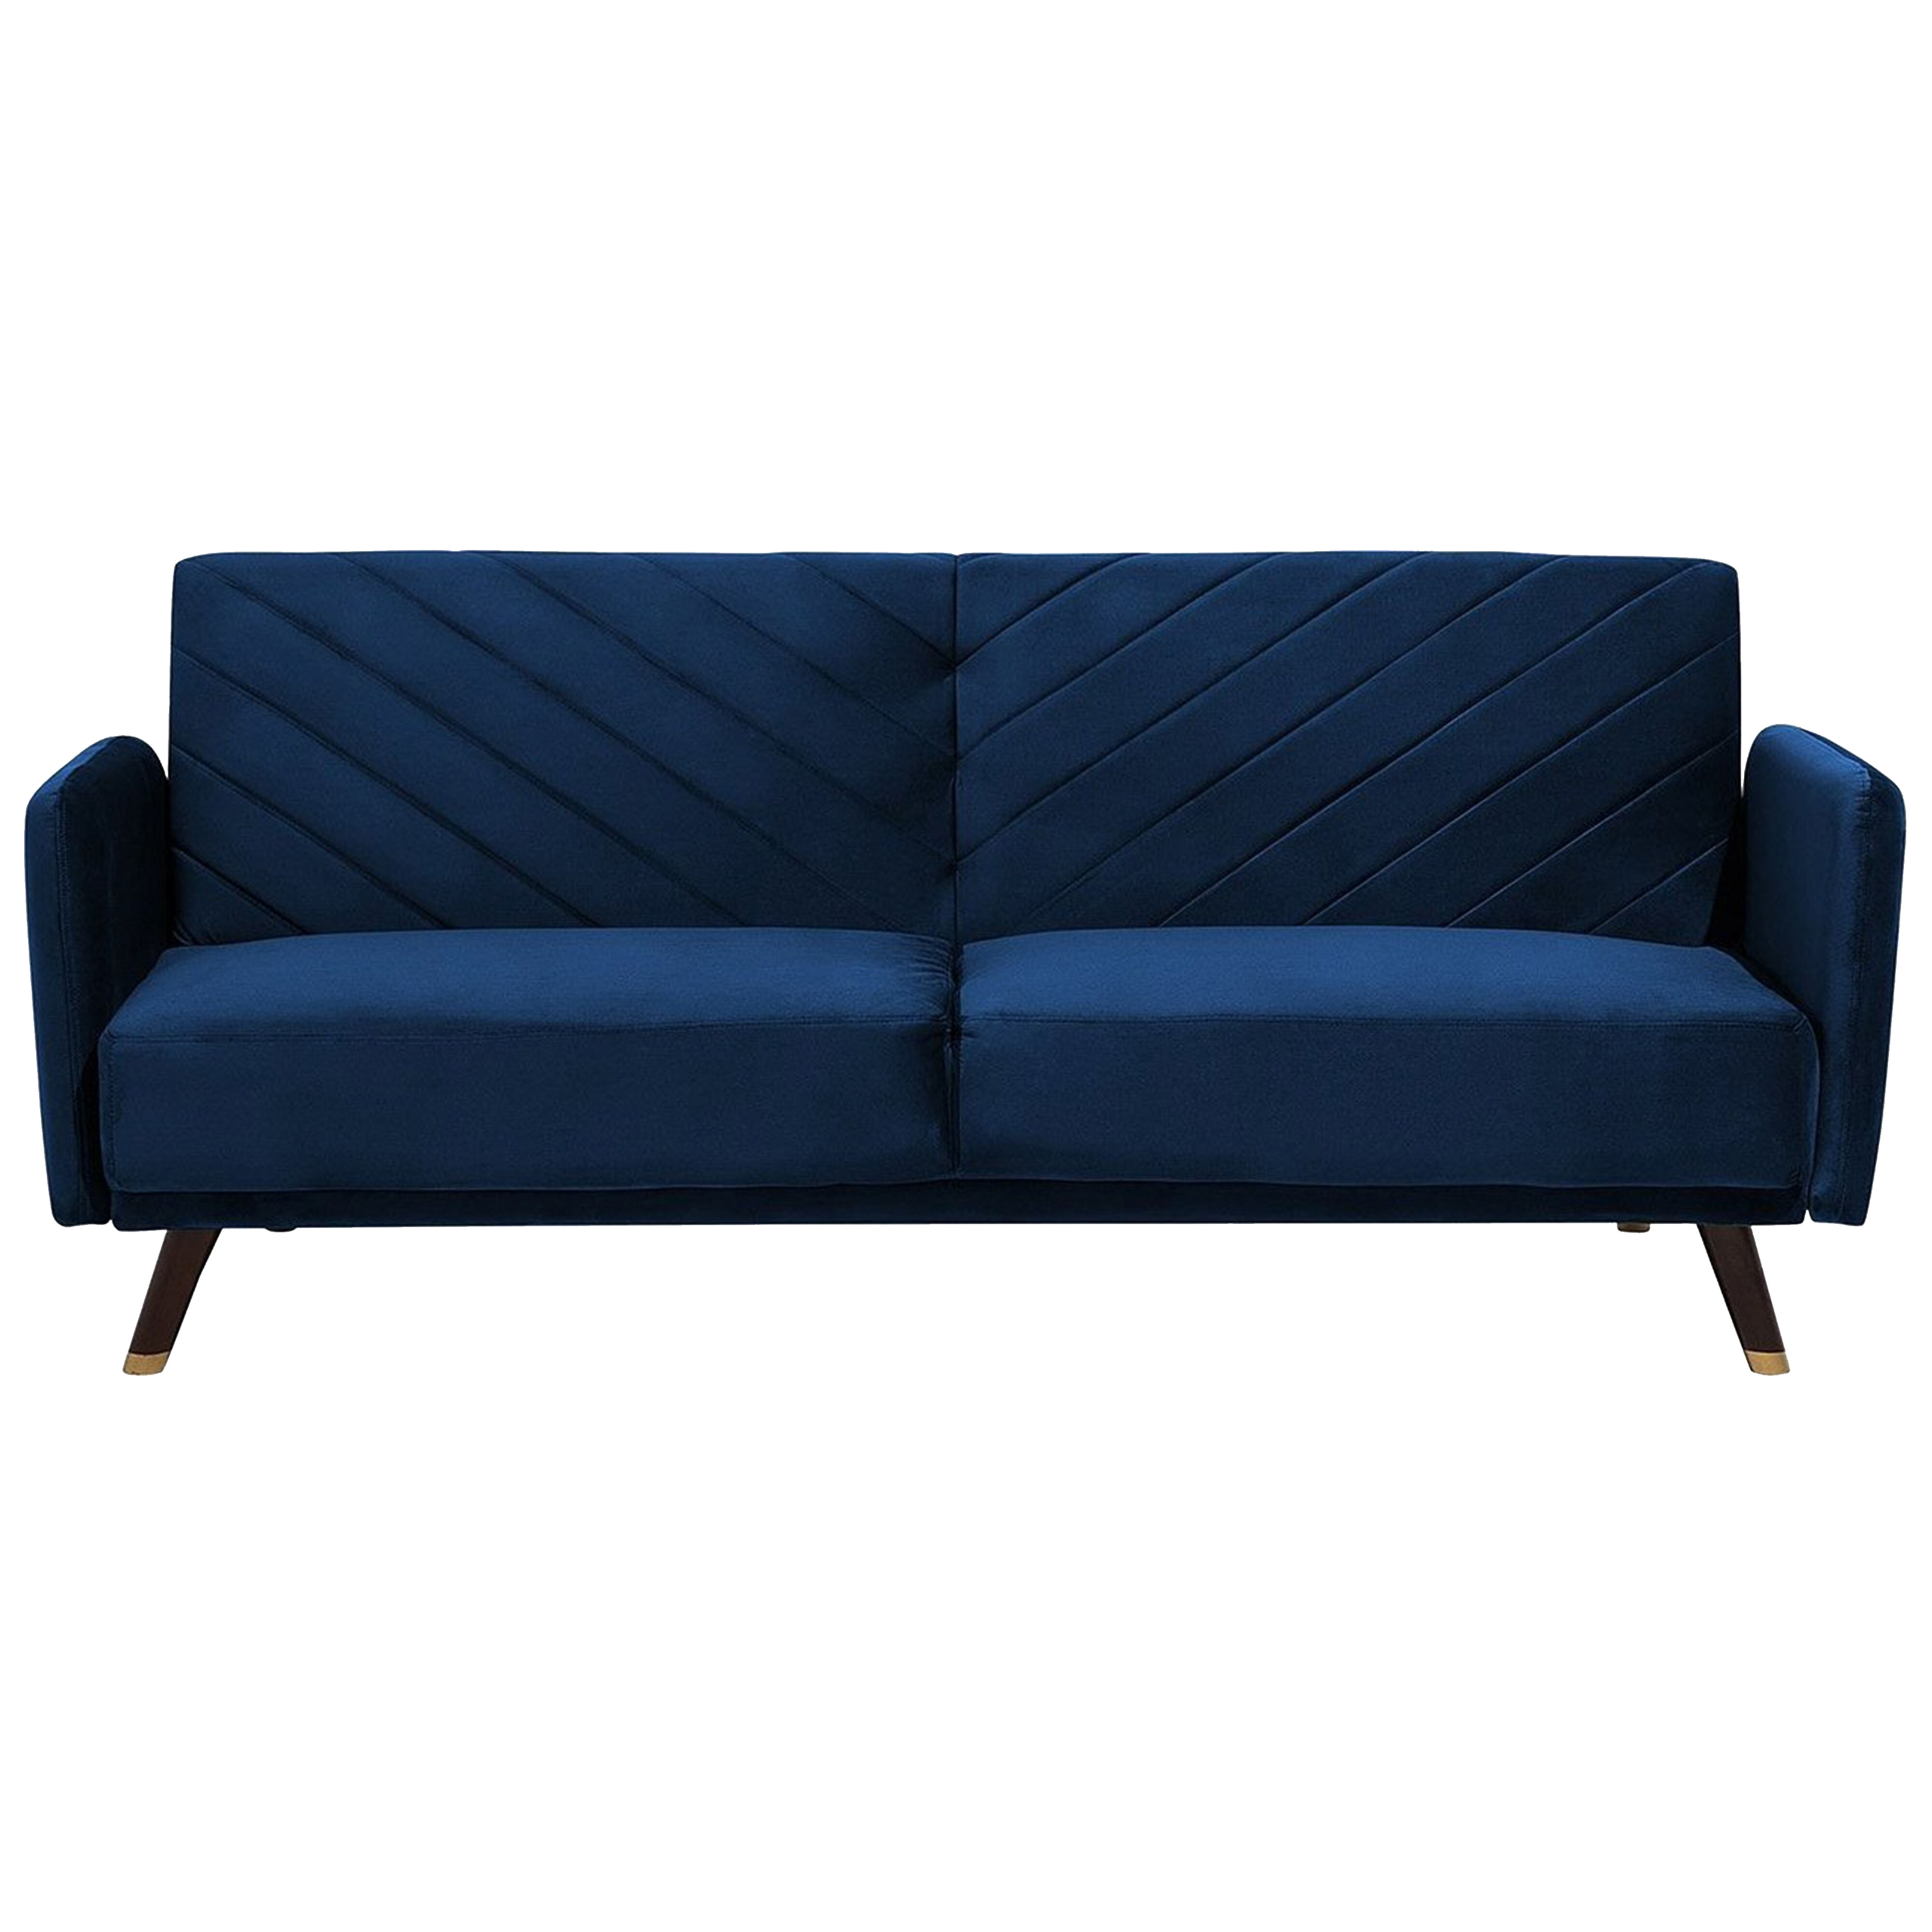 Beliani Sofa Bed Navy Blue Velvet Fabric Modern Living Room 3 Seater Wooden Legs Track Arm